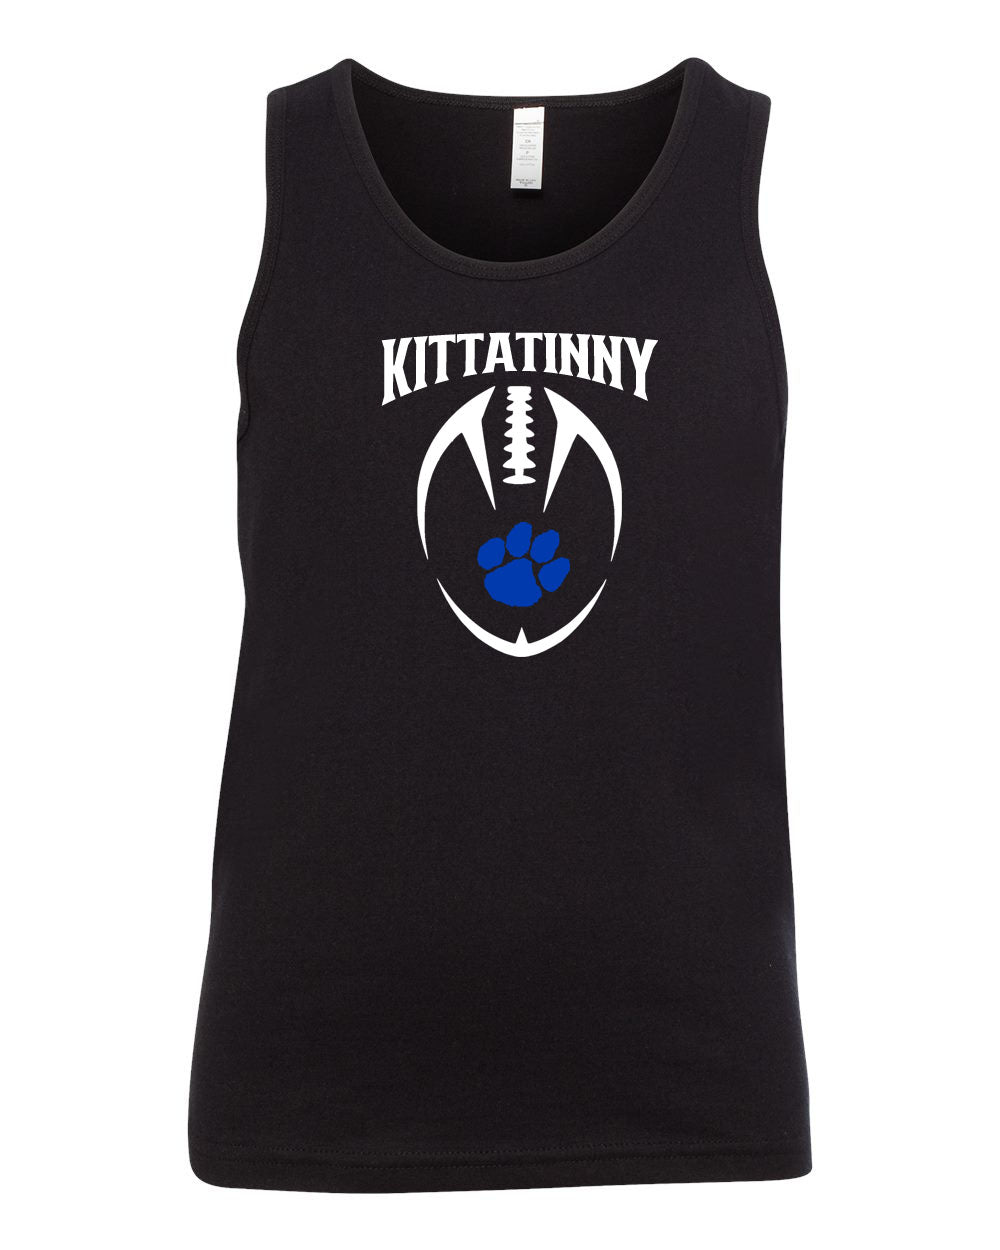 Kittatinny Football Design 8 Muscle Tank Top